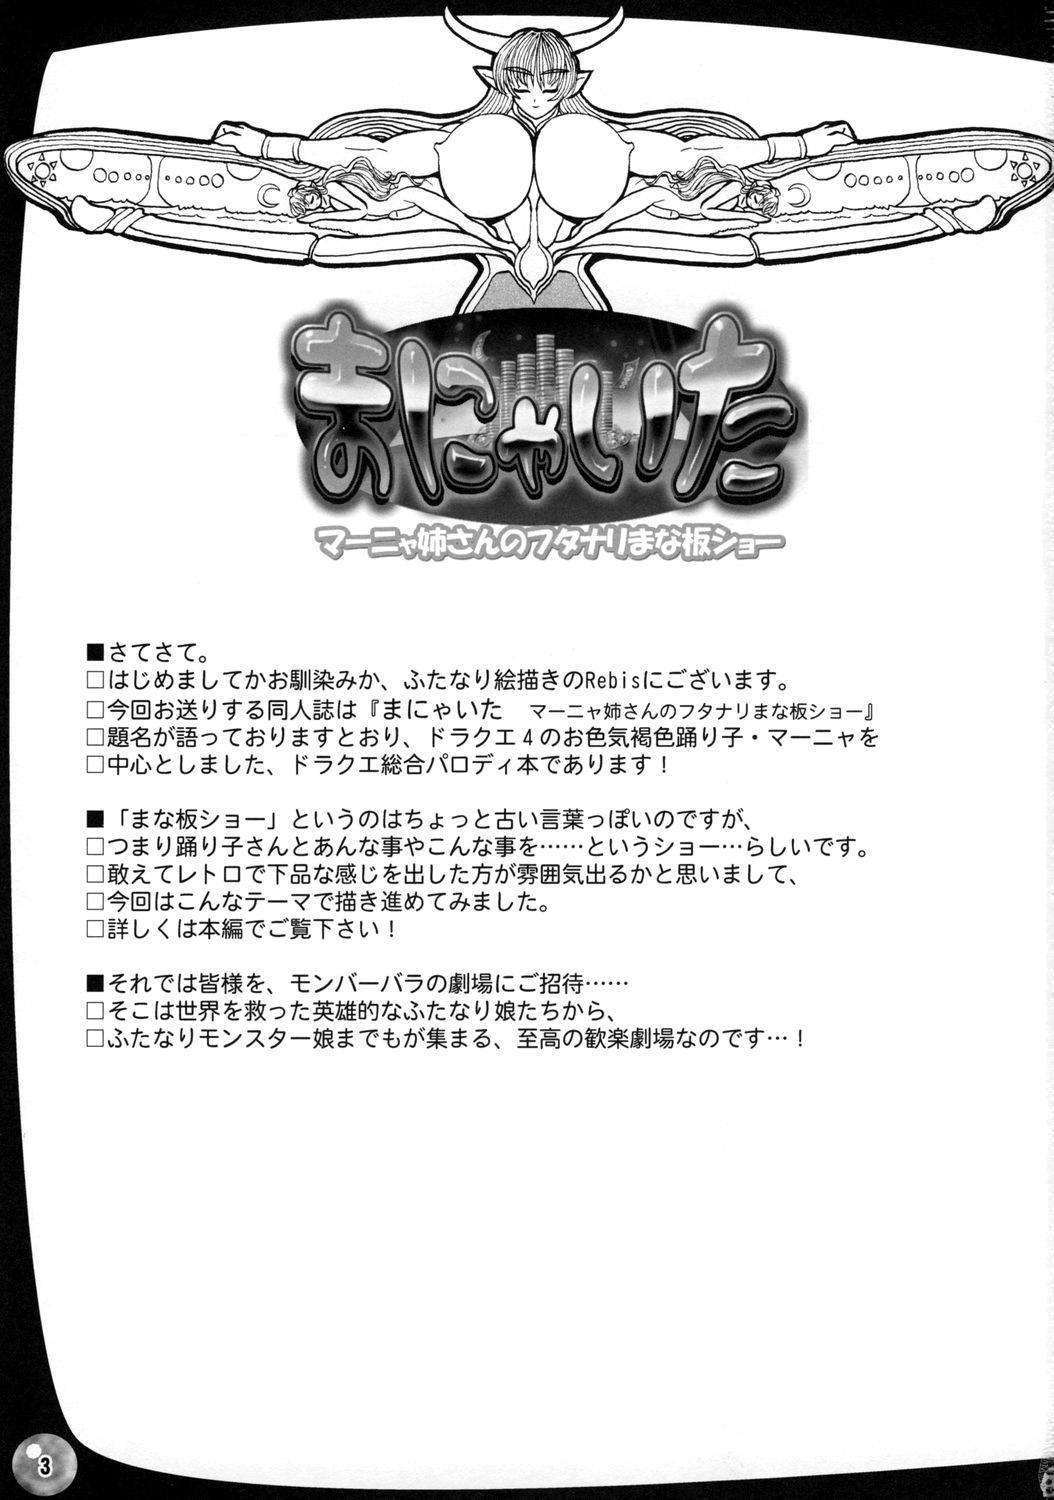 Foot Job (C73) [Arsenothelus (Rebis)] TGWOA Vol.22 - Manya-Ita! (Dragon Quest IV) [English] - Dragon quest iv Dragon quest Defloration - Page 2